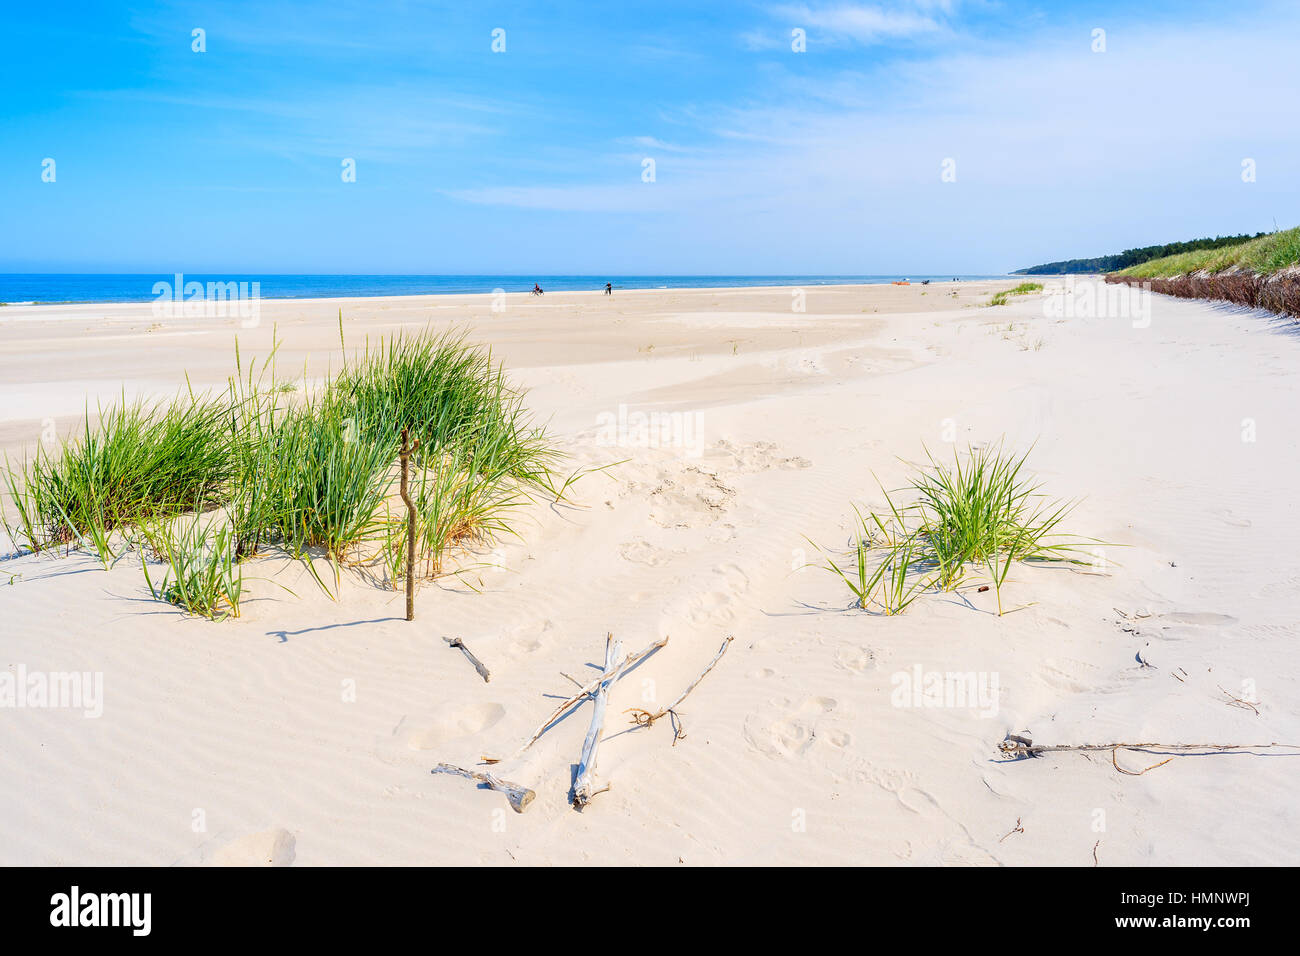 L'herbe verte sur la plage de dunes de sable sur la mer Baltique, Lubiatowo, Pologne Banque D'Images